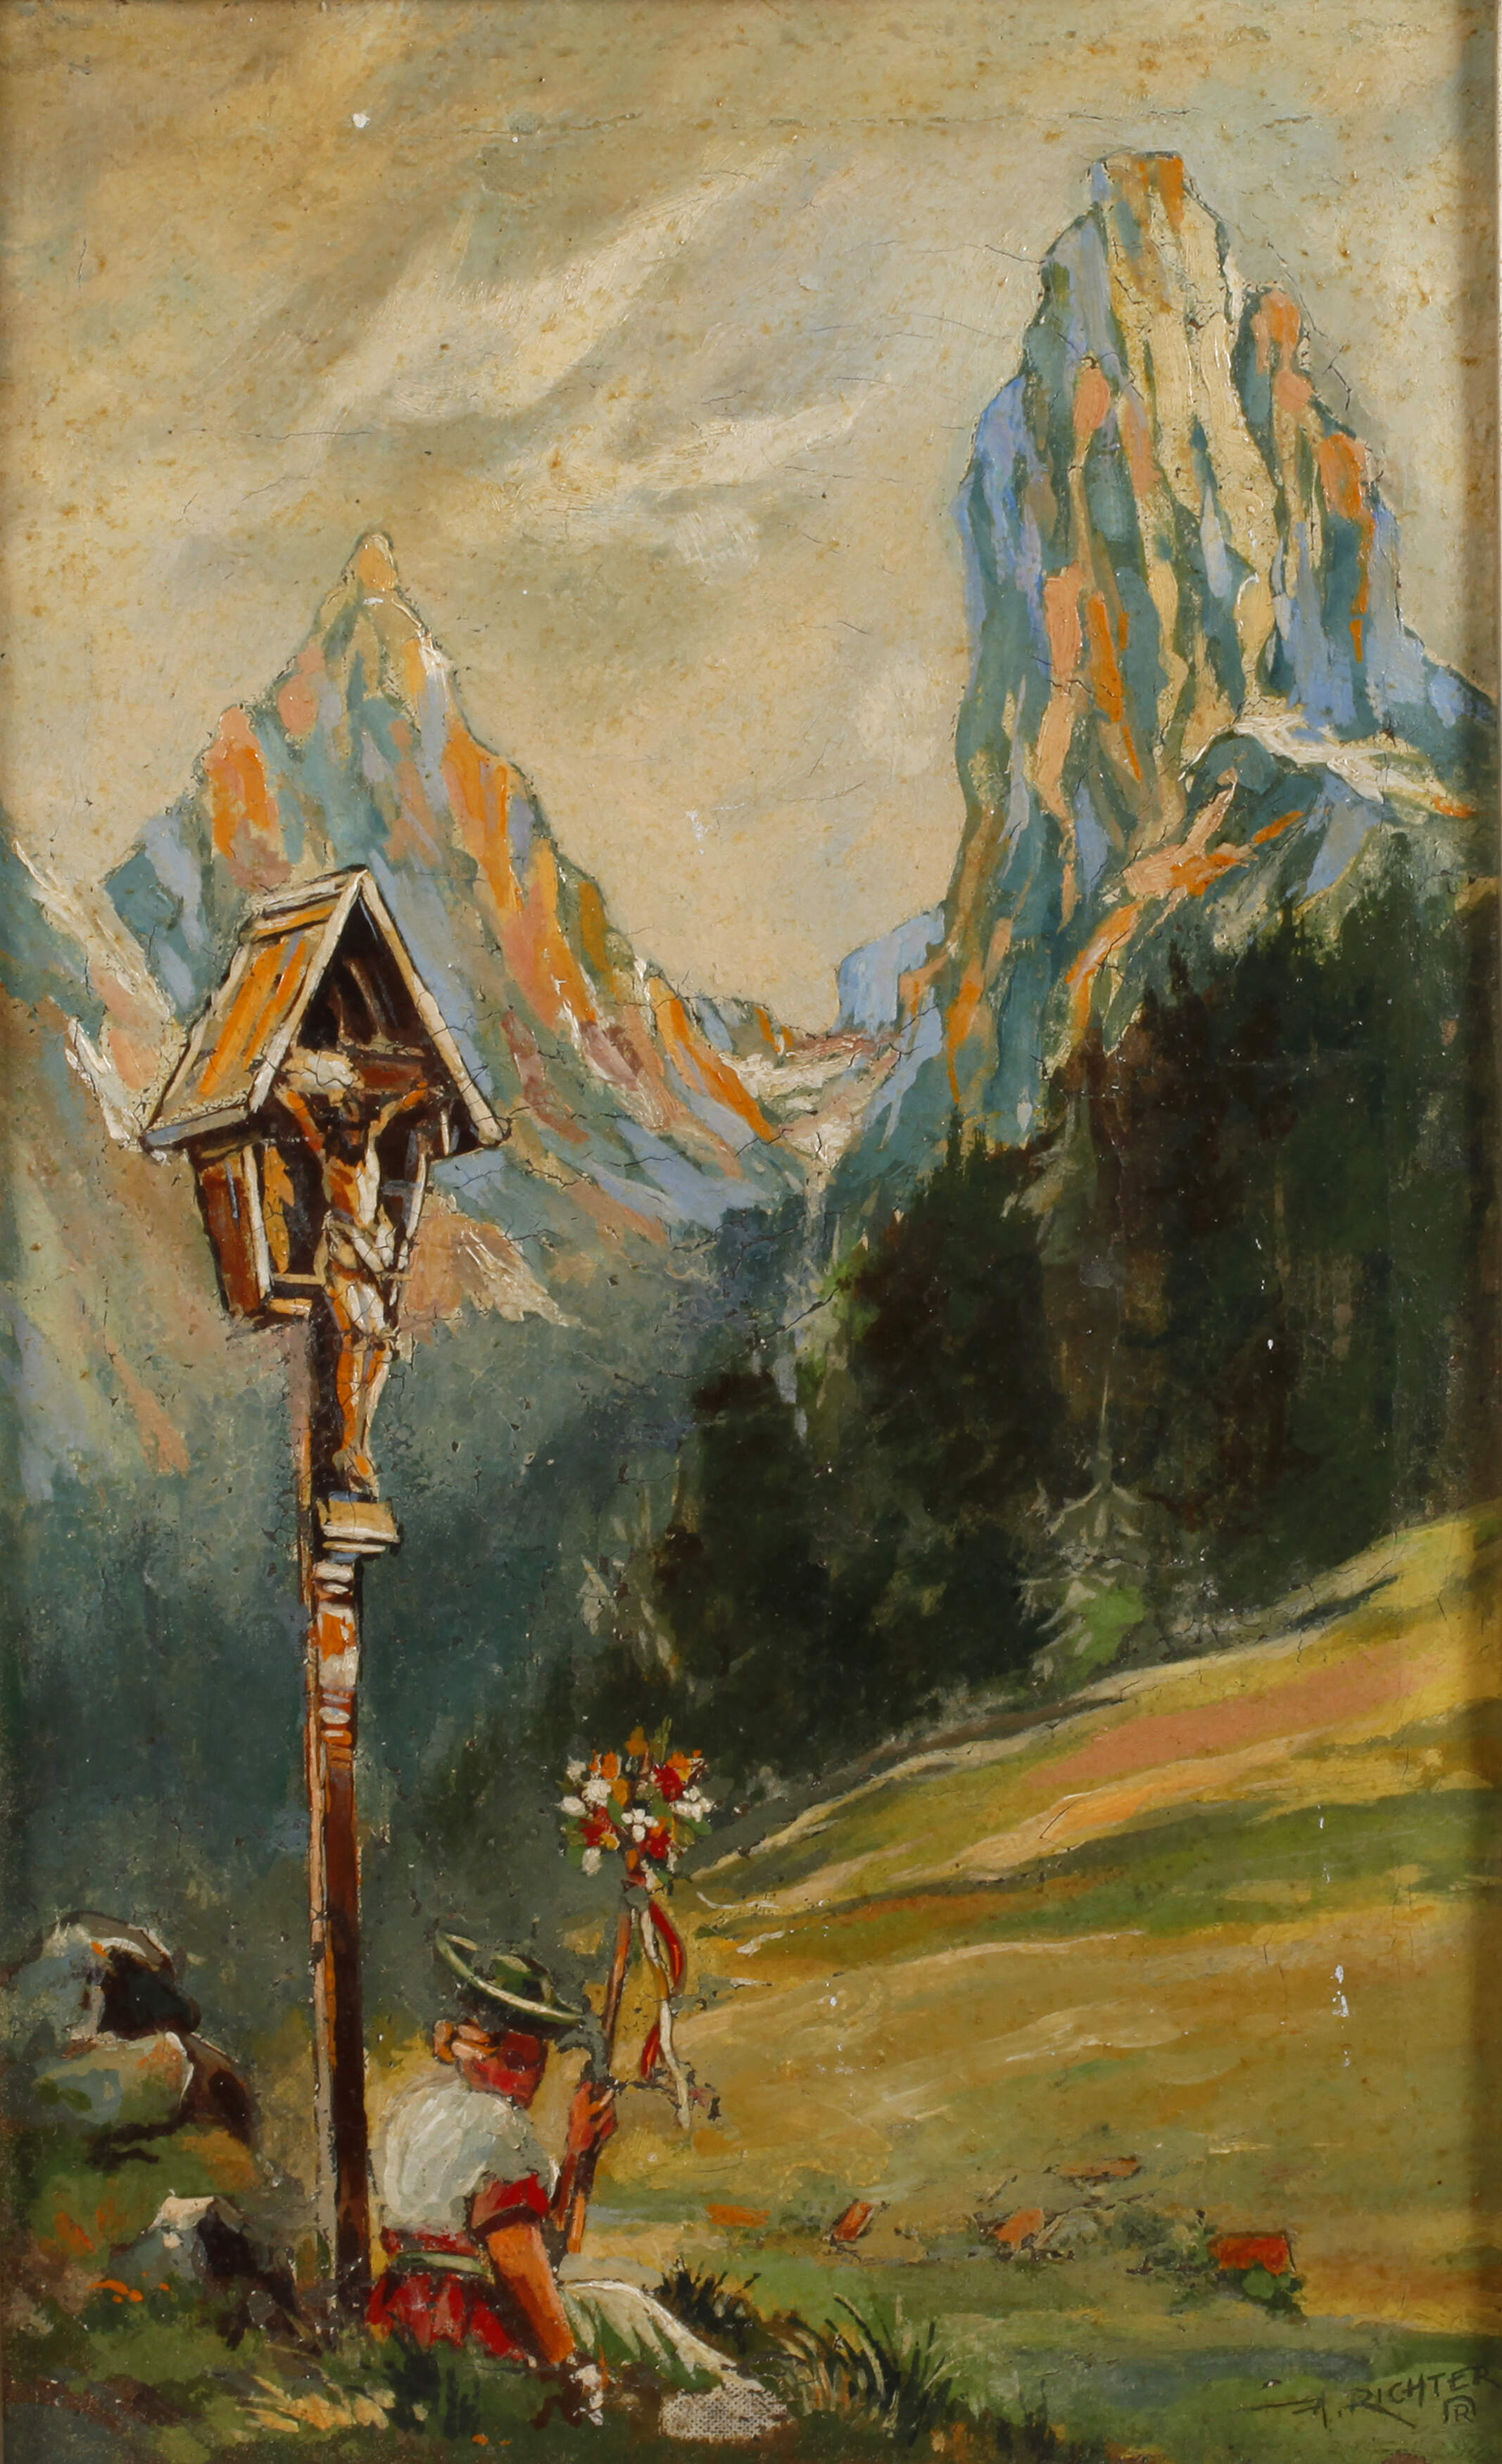 A. Richter, Maid am Marterl im Gebirge